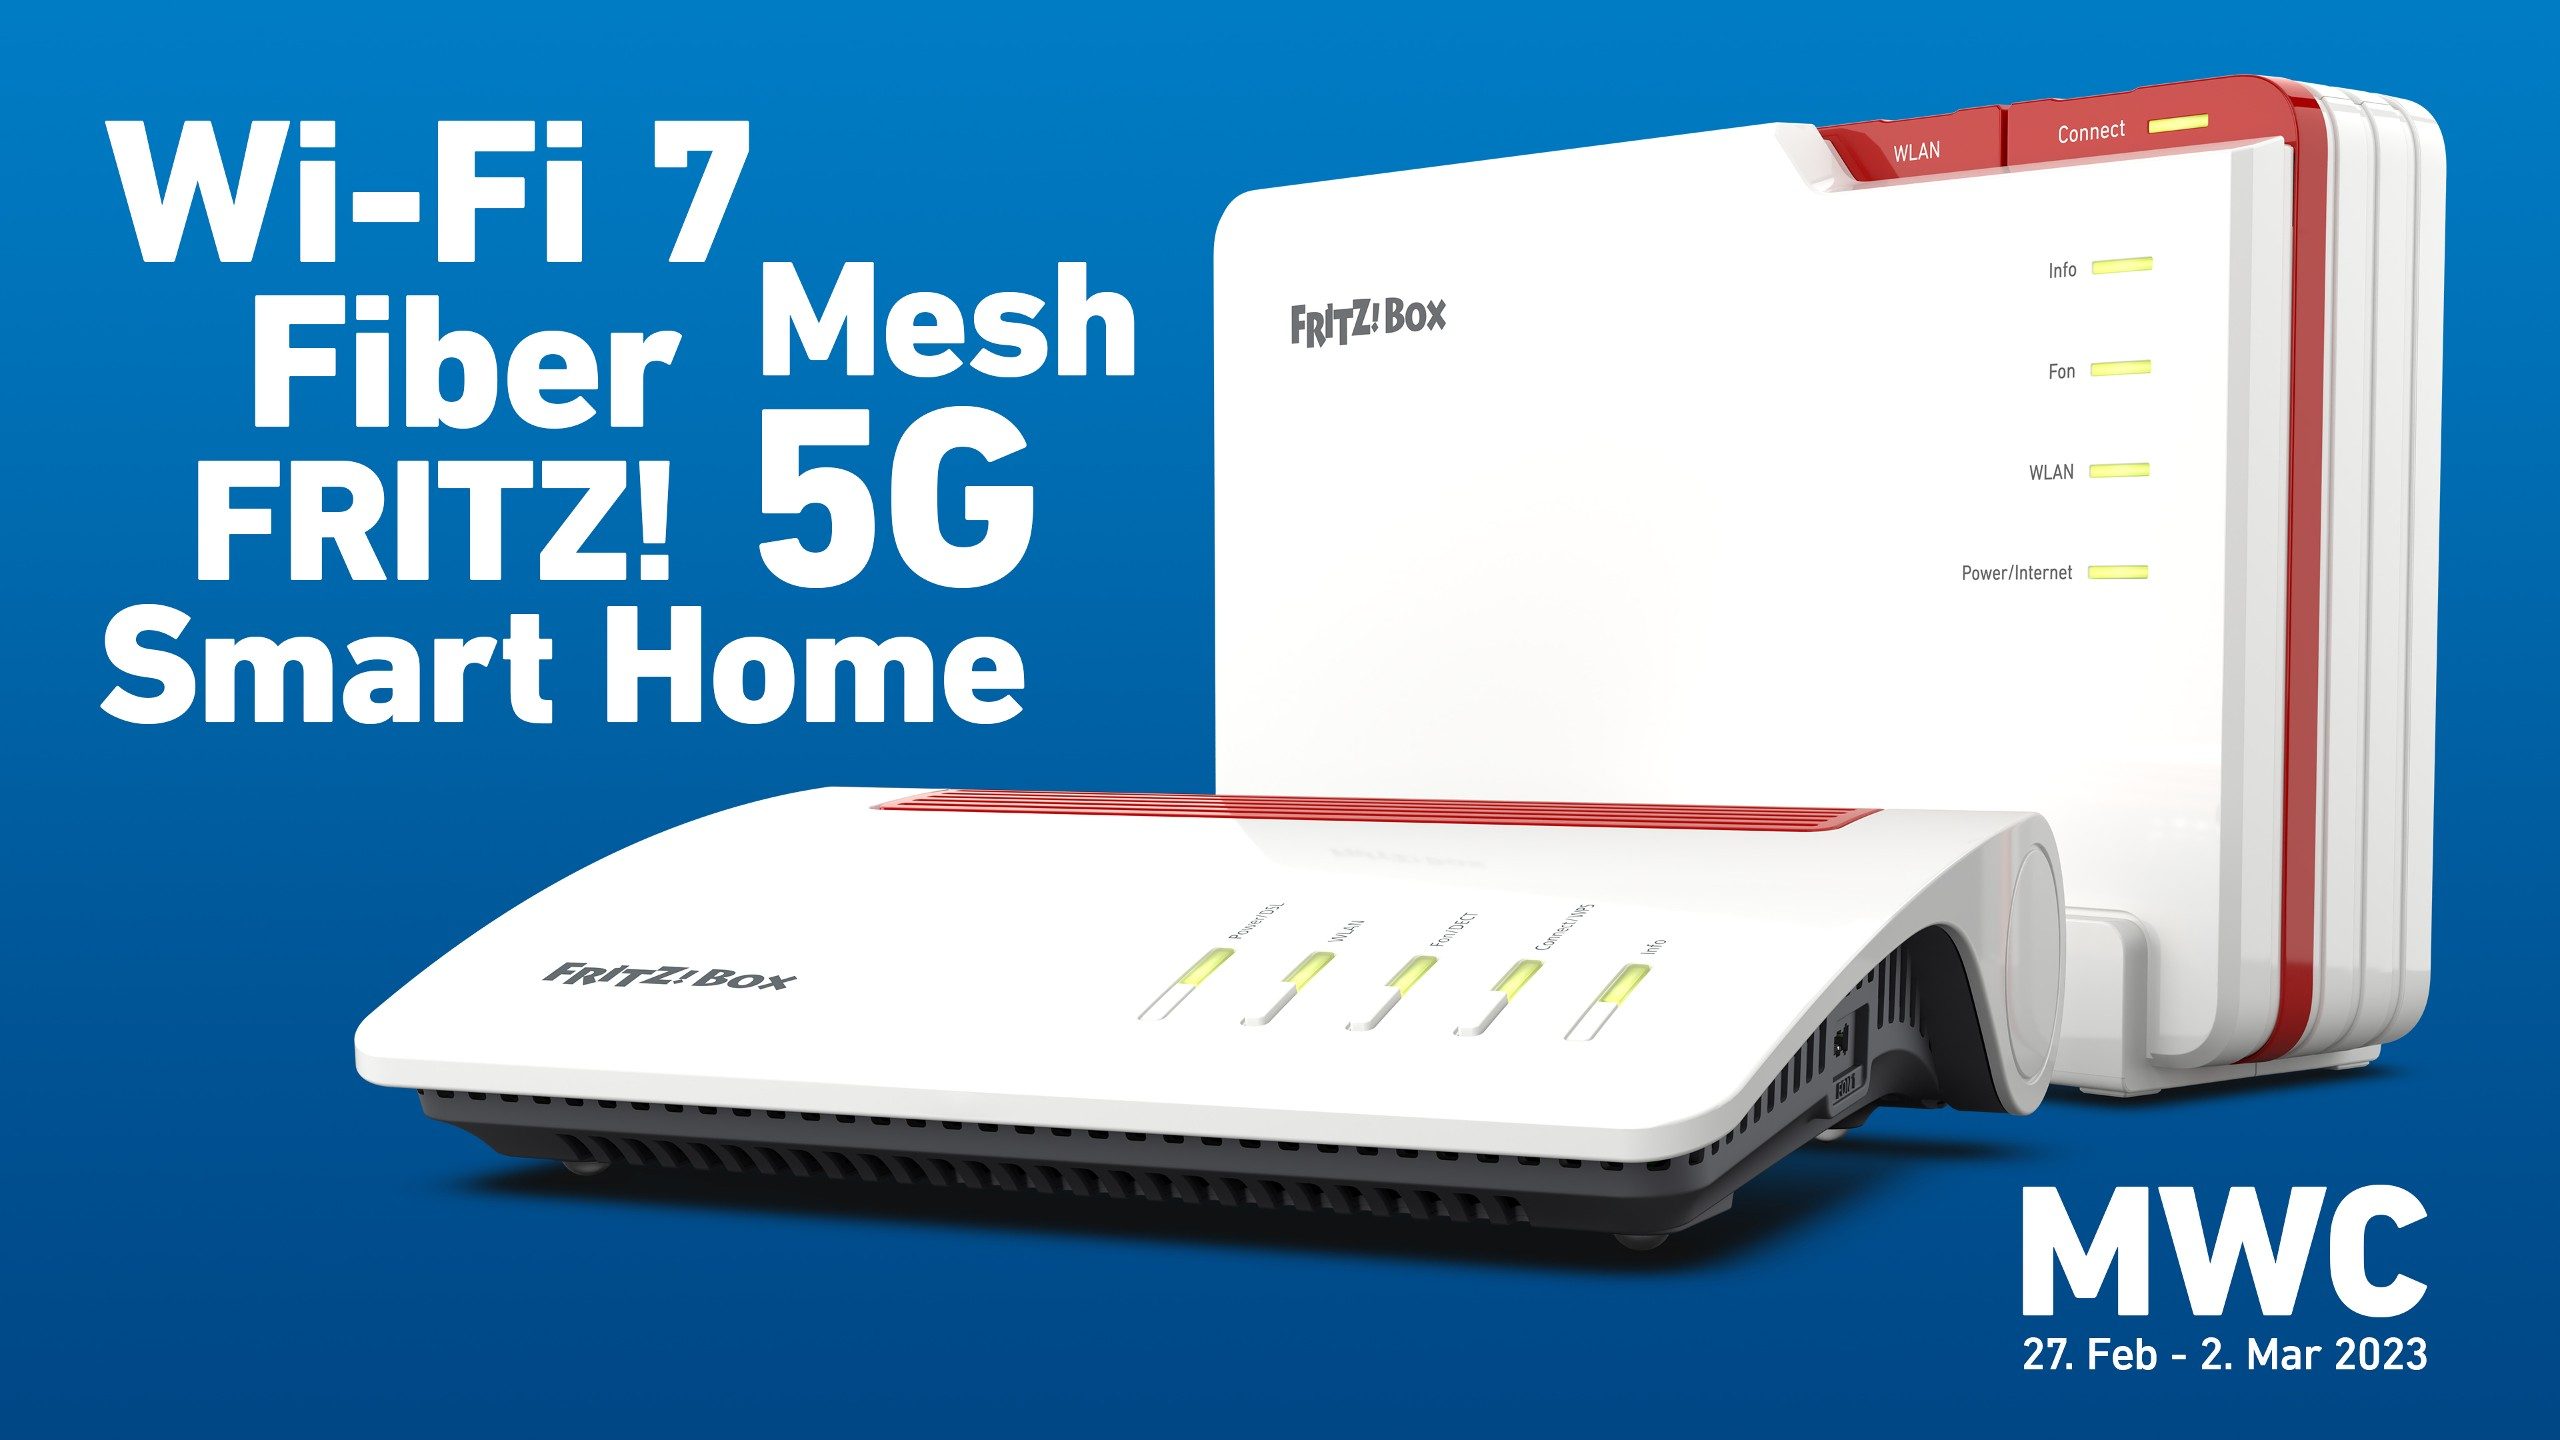 Zwei neue FritzBox-Router von AVM vor blauem Hintergrund. Dazu die Worte: Wi-Fi 7, Fiber, Mesh, FRITZ!, 5G, Smart Home und MWC.